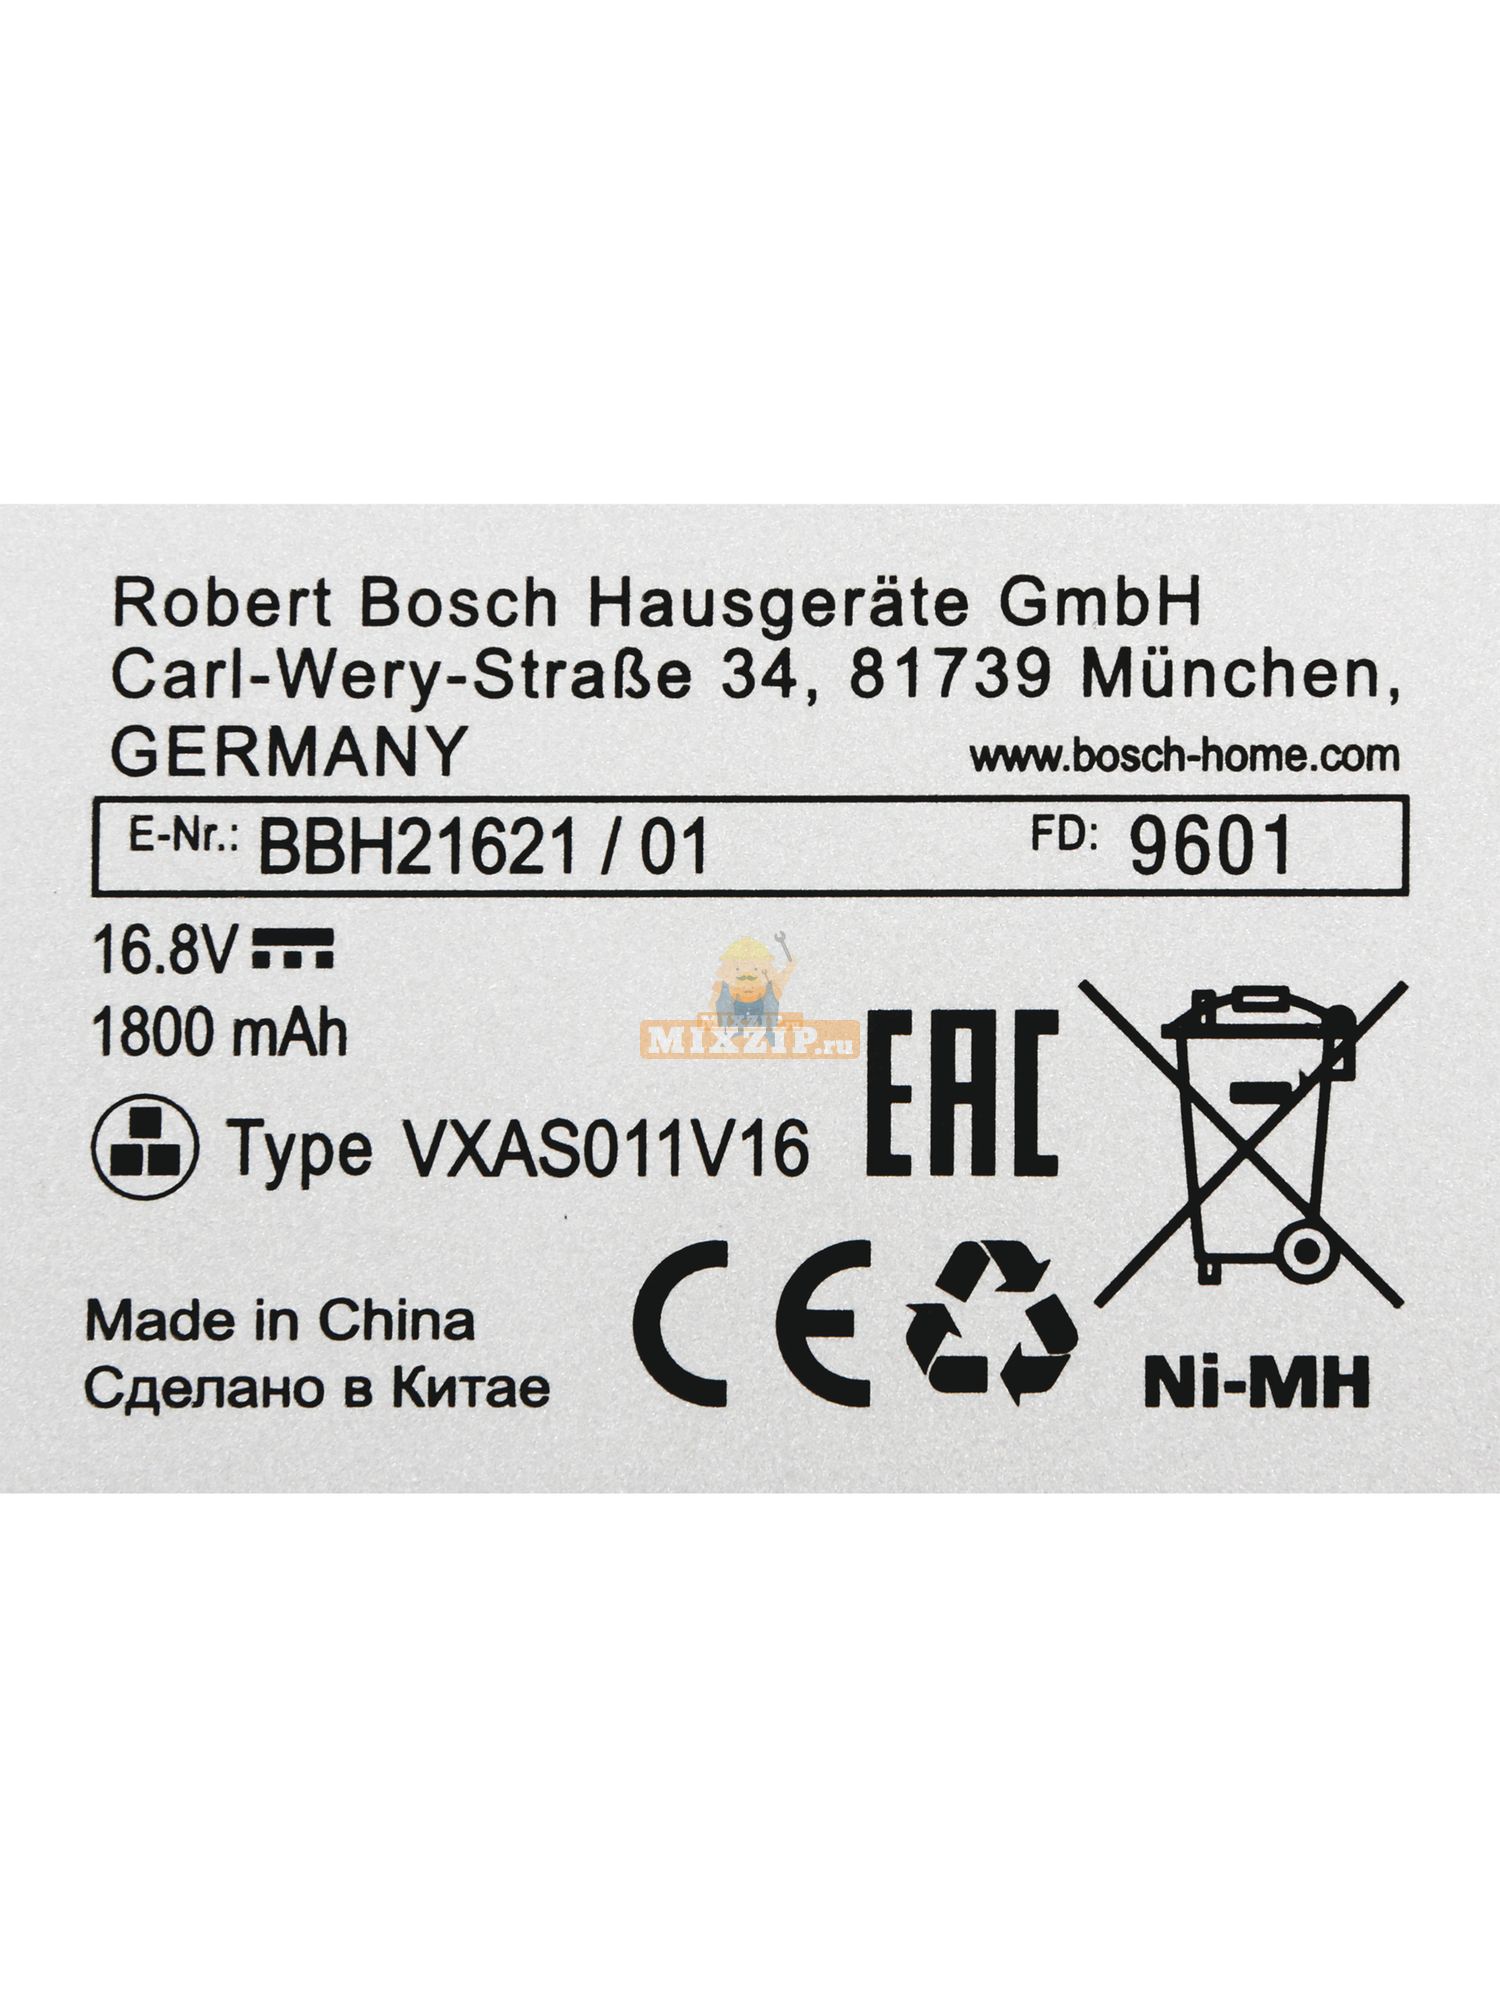 Купить аккумулятор для пылесоса бош. Аккумуляторная батарея для беспроводного пылесоса Bosch bbh21621. Аккумулятор для пылесоса Bosch bbh21621. Vxas011v16 аккумулятор для пылесоса Bosch. Аккумулятор пылесос Robert Bosch vxaso11v16.